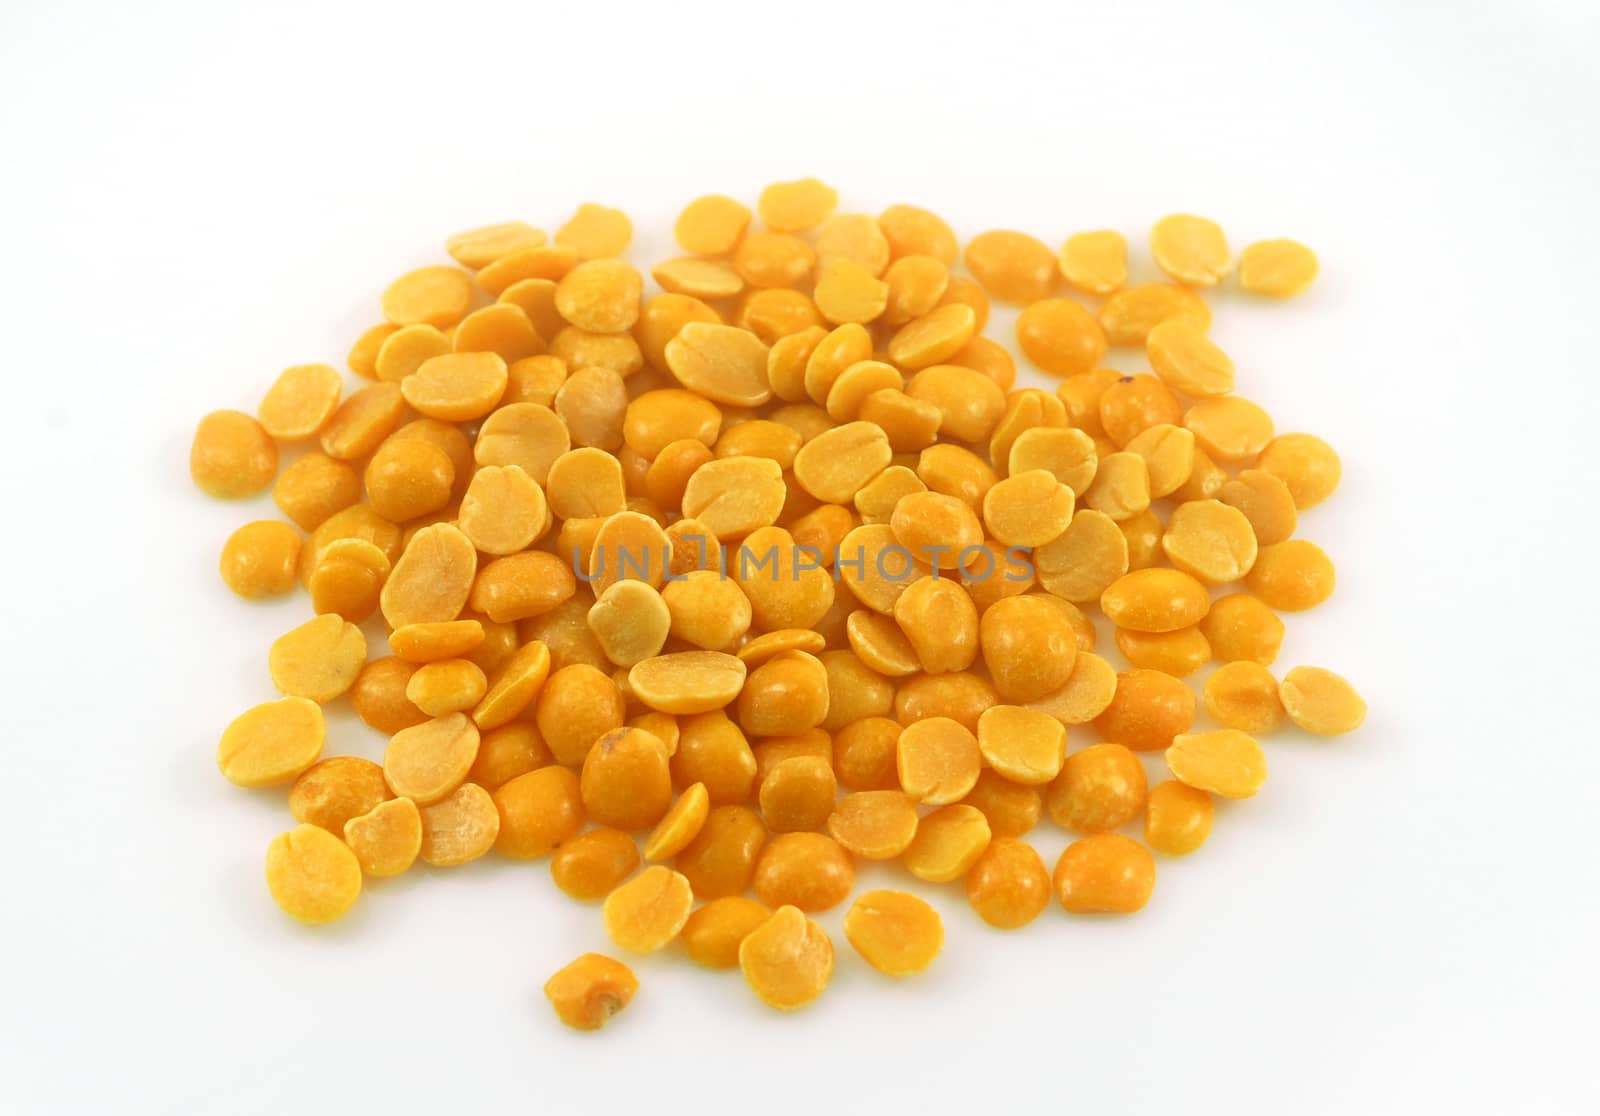 Yellow Arhar Toor Lentil Dal Grain pulse for healthy vegetarian food